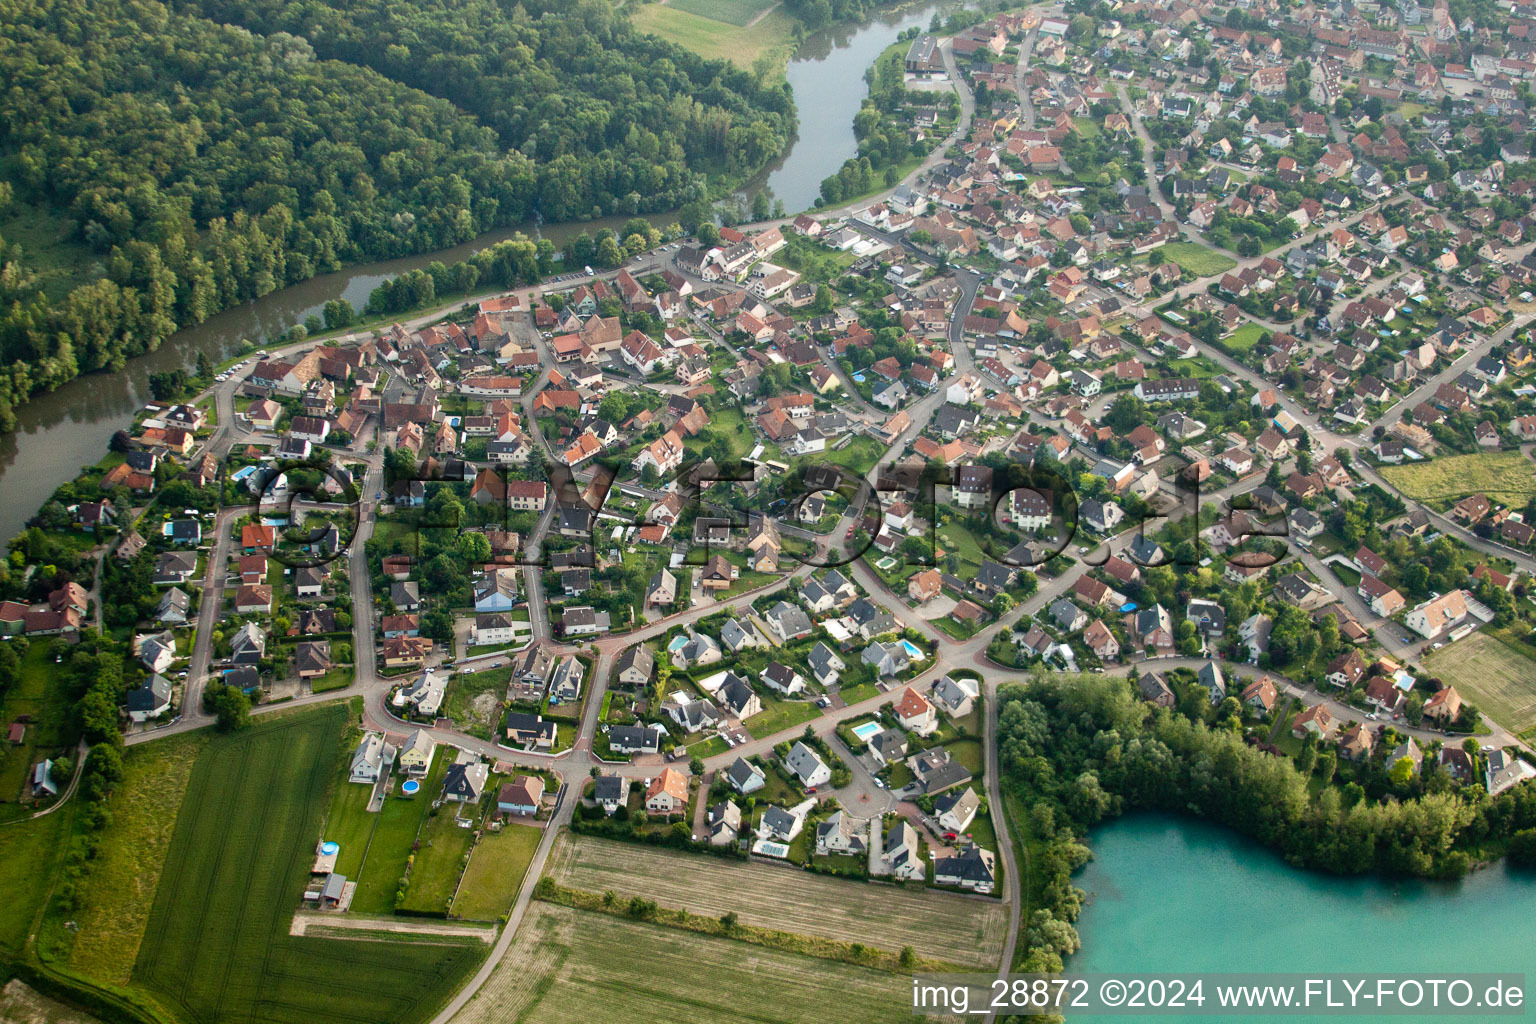 Settlement area in La Wantzenau in Grand Est, France